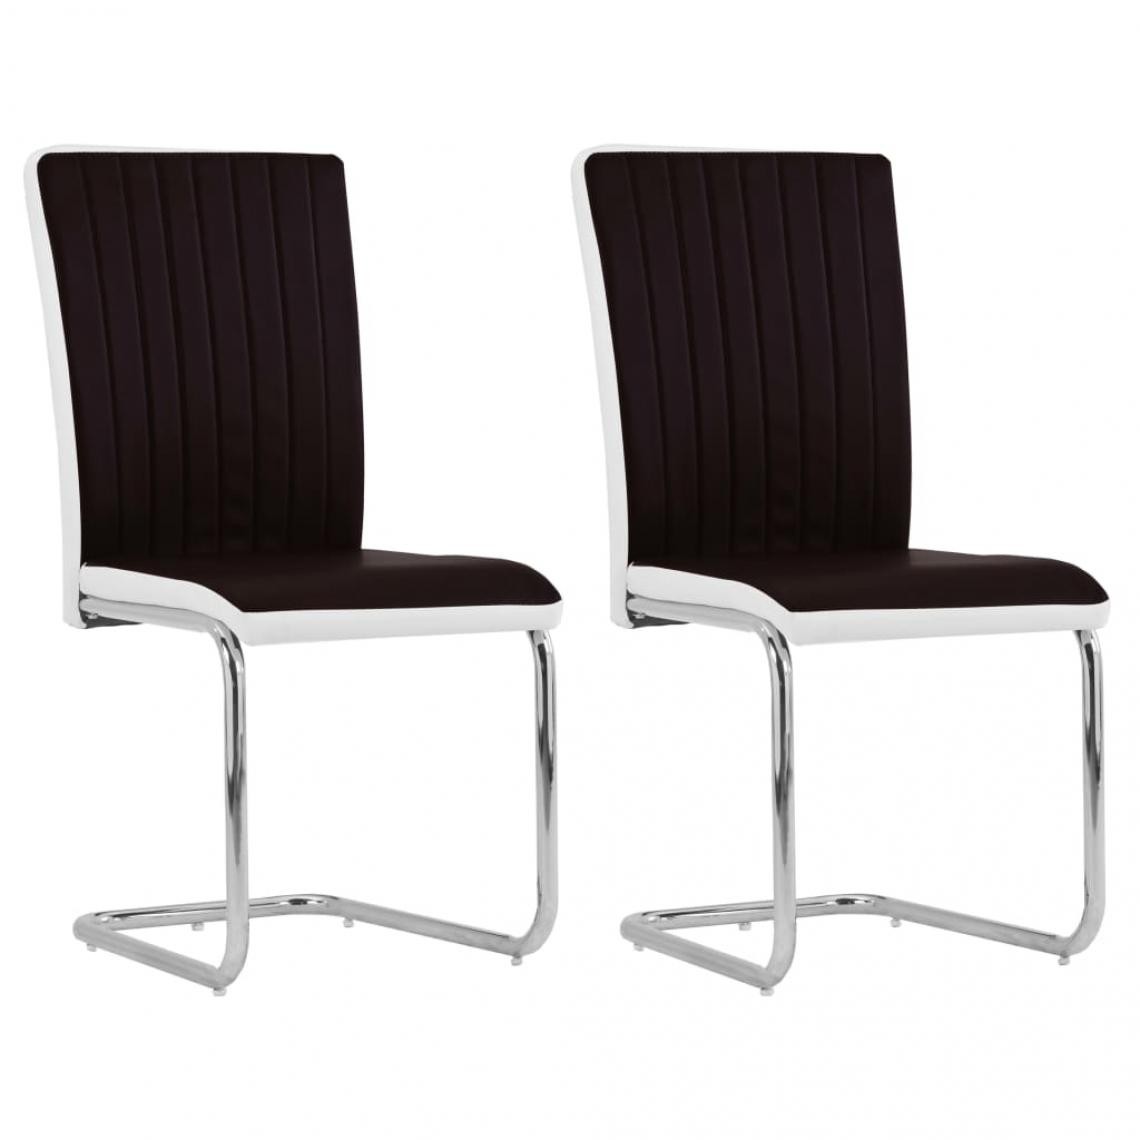 Decoshop26 - Lot de 2 chaises de salle à manger cuisine cantilever design intemporel similicuir marron CDS020359 - Chaises